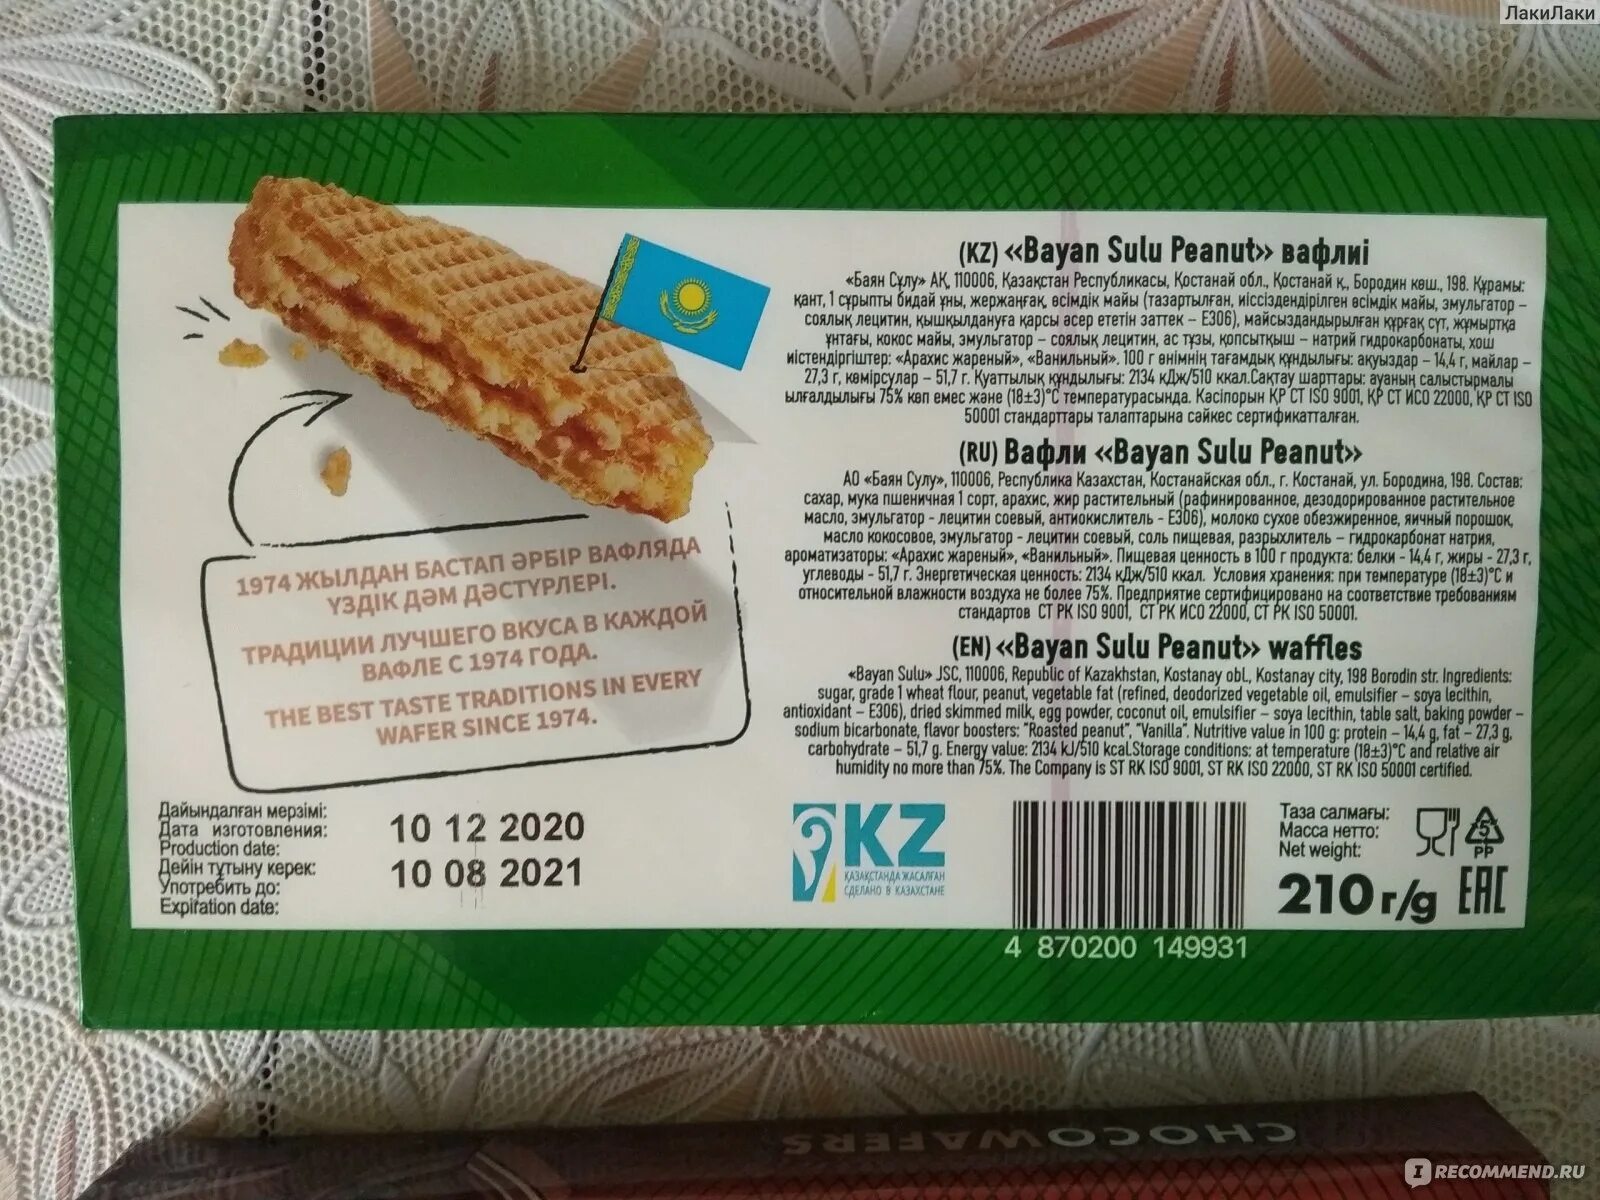 Купили 15 пачек вафель. Казахстанские вафли с арахисом. Вафли Bayan sulu Peanut. Вафли в упаковке. Вафли в зеленой упаковке.